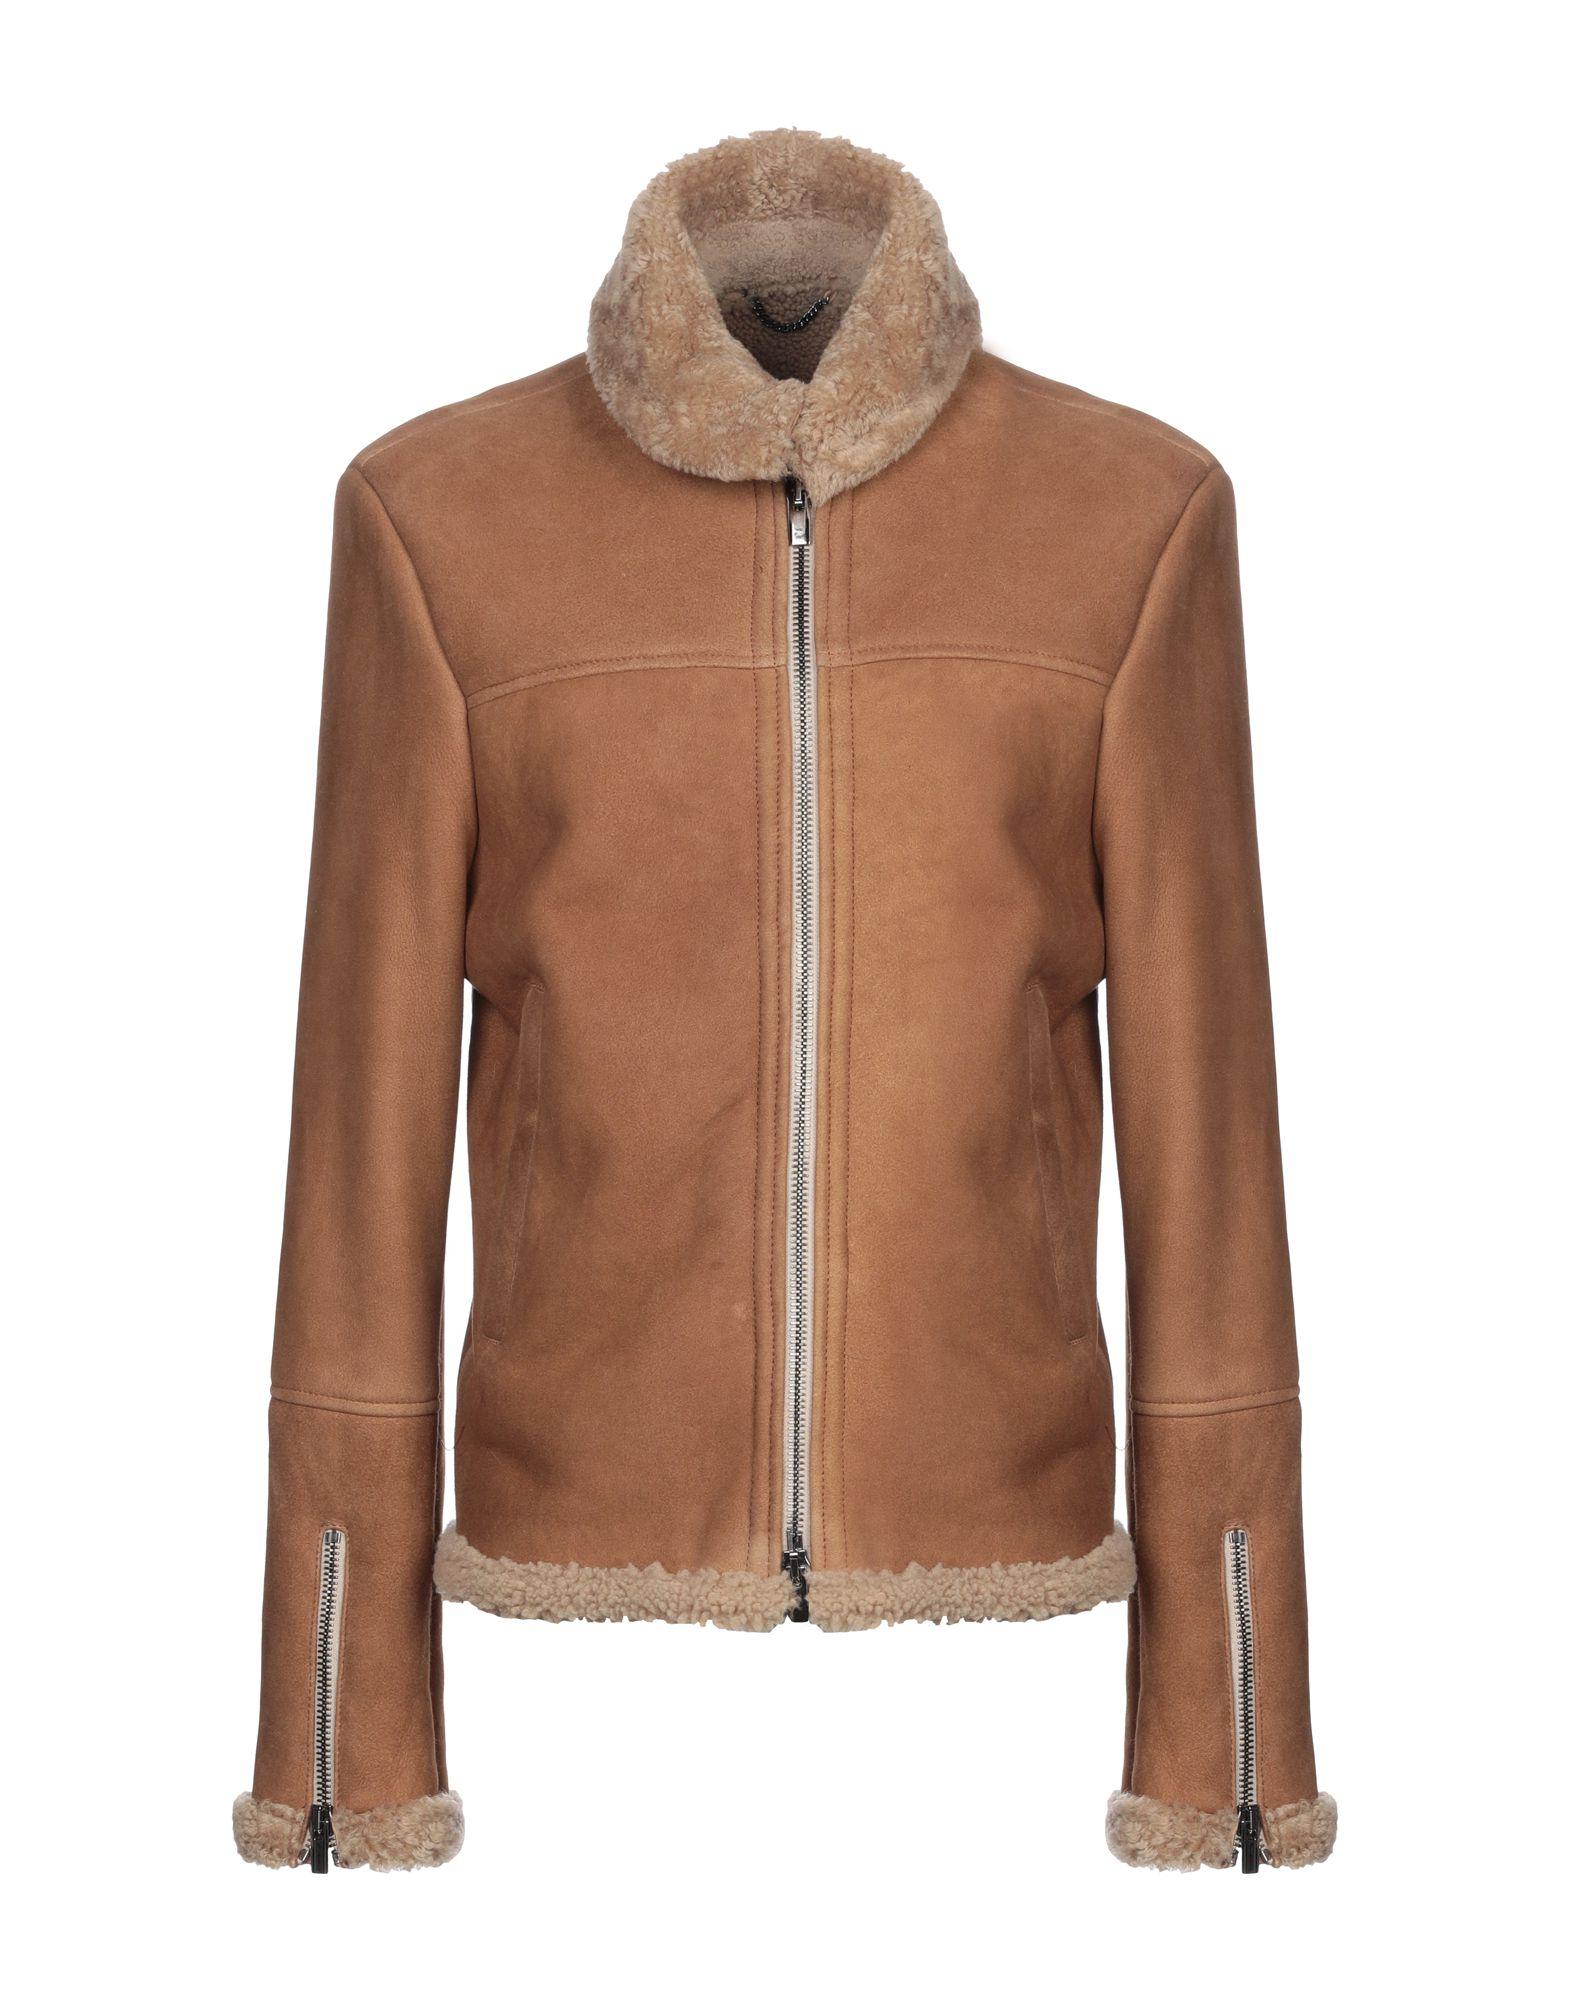 Vintage De Luxe Jacket in Brown for Men - Lyst